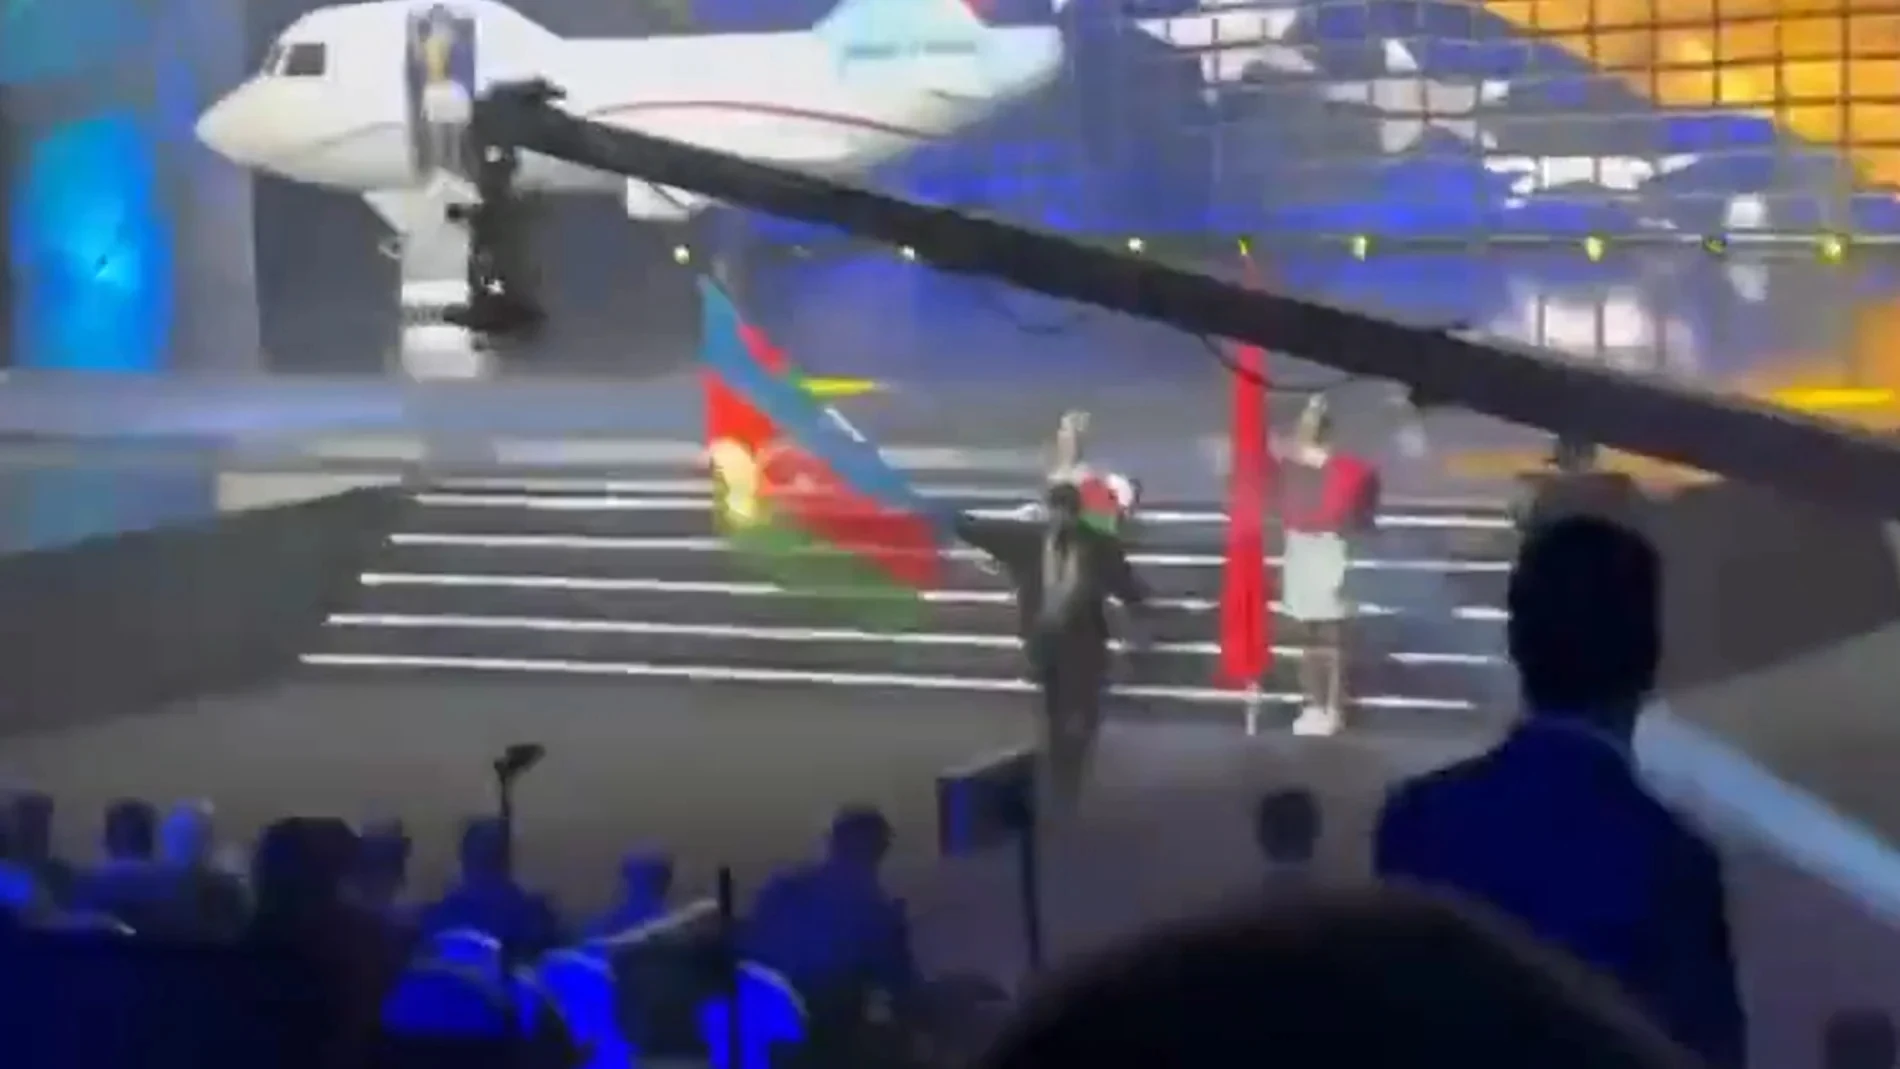 Queman en directo la bandera de Azerbaiyán en el Europeo de Halterofilia